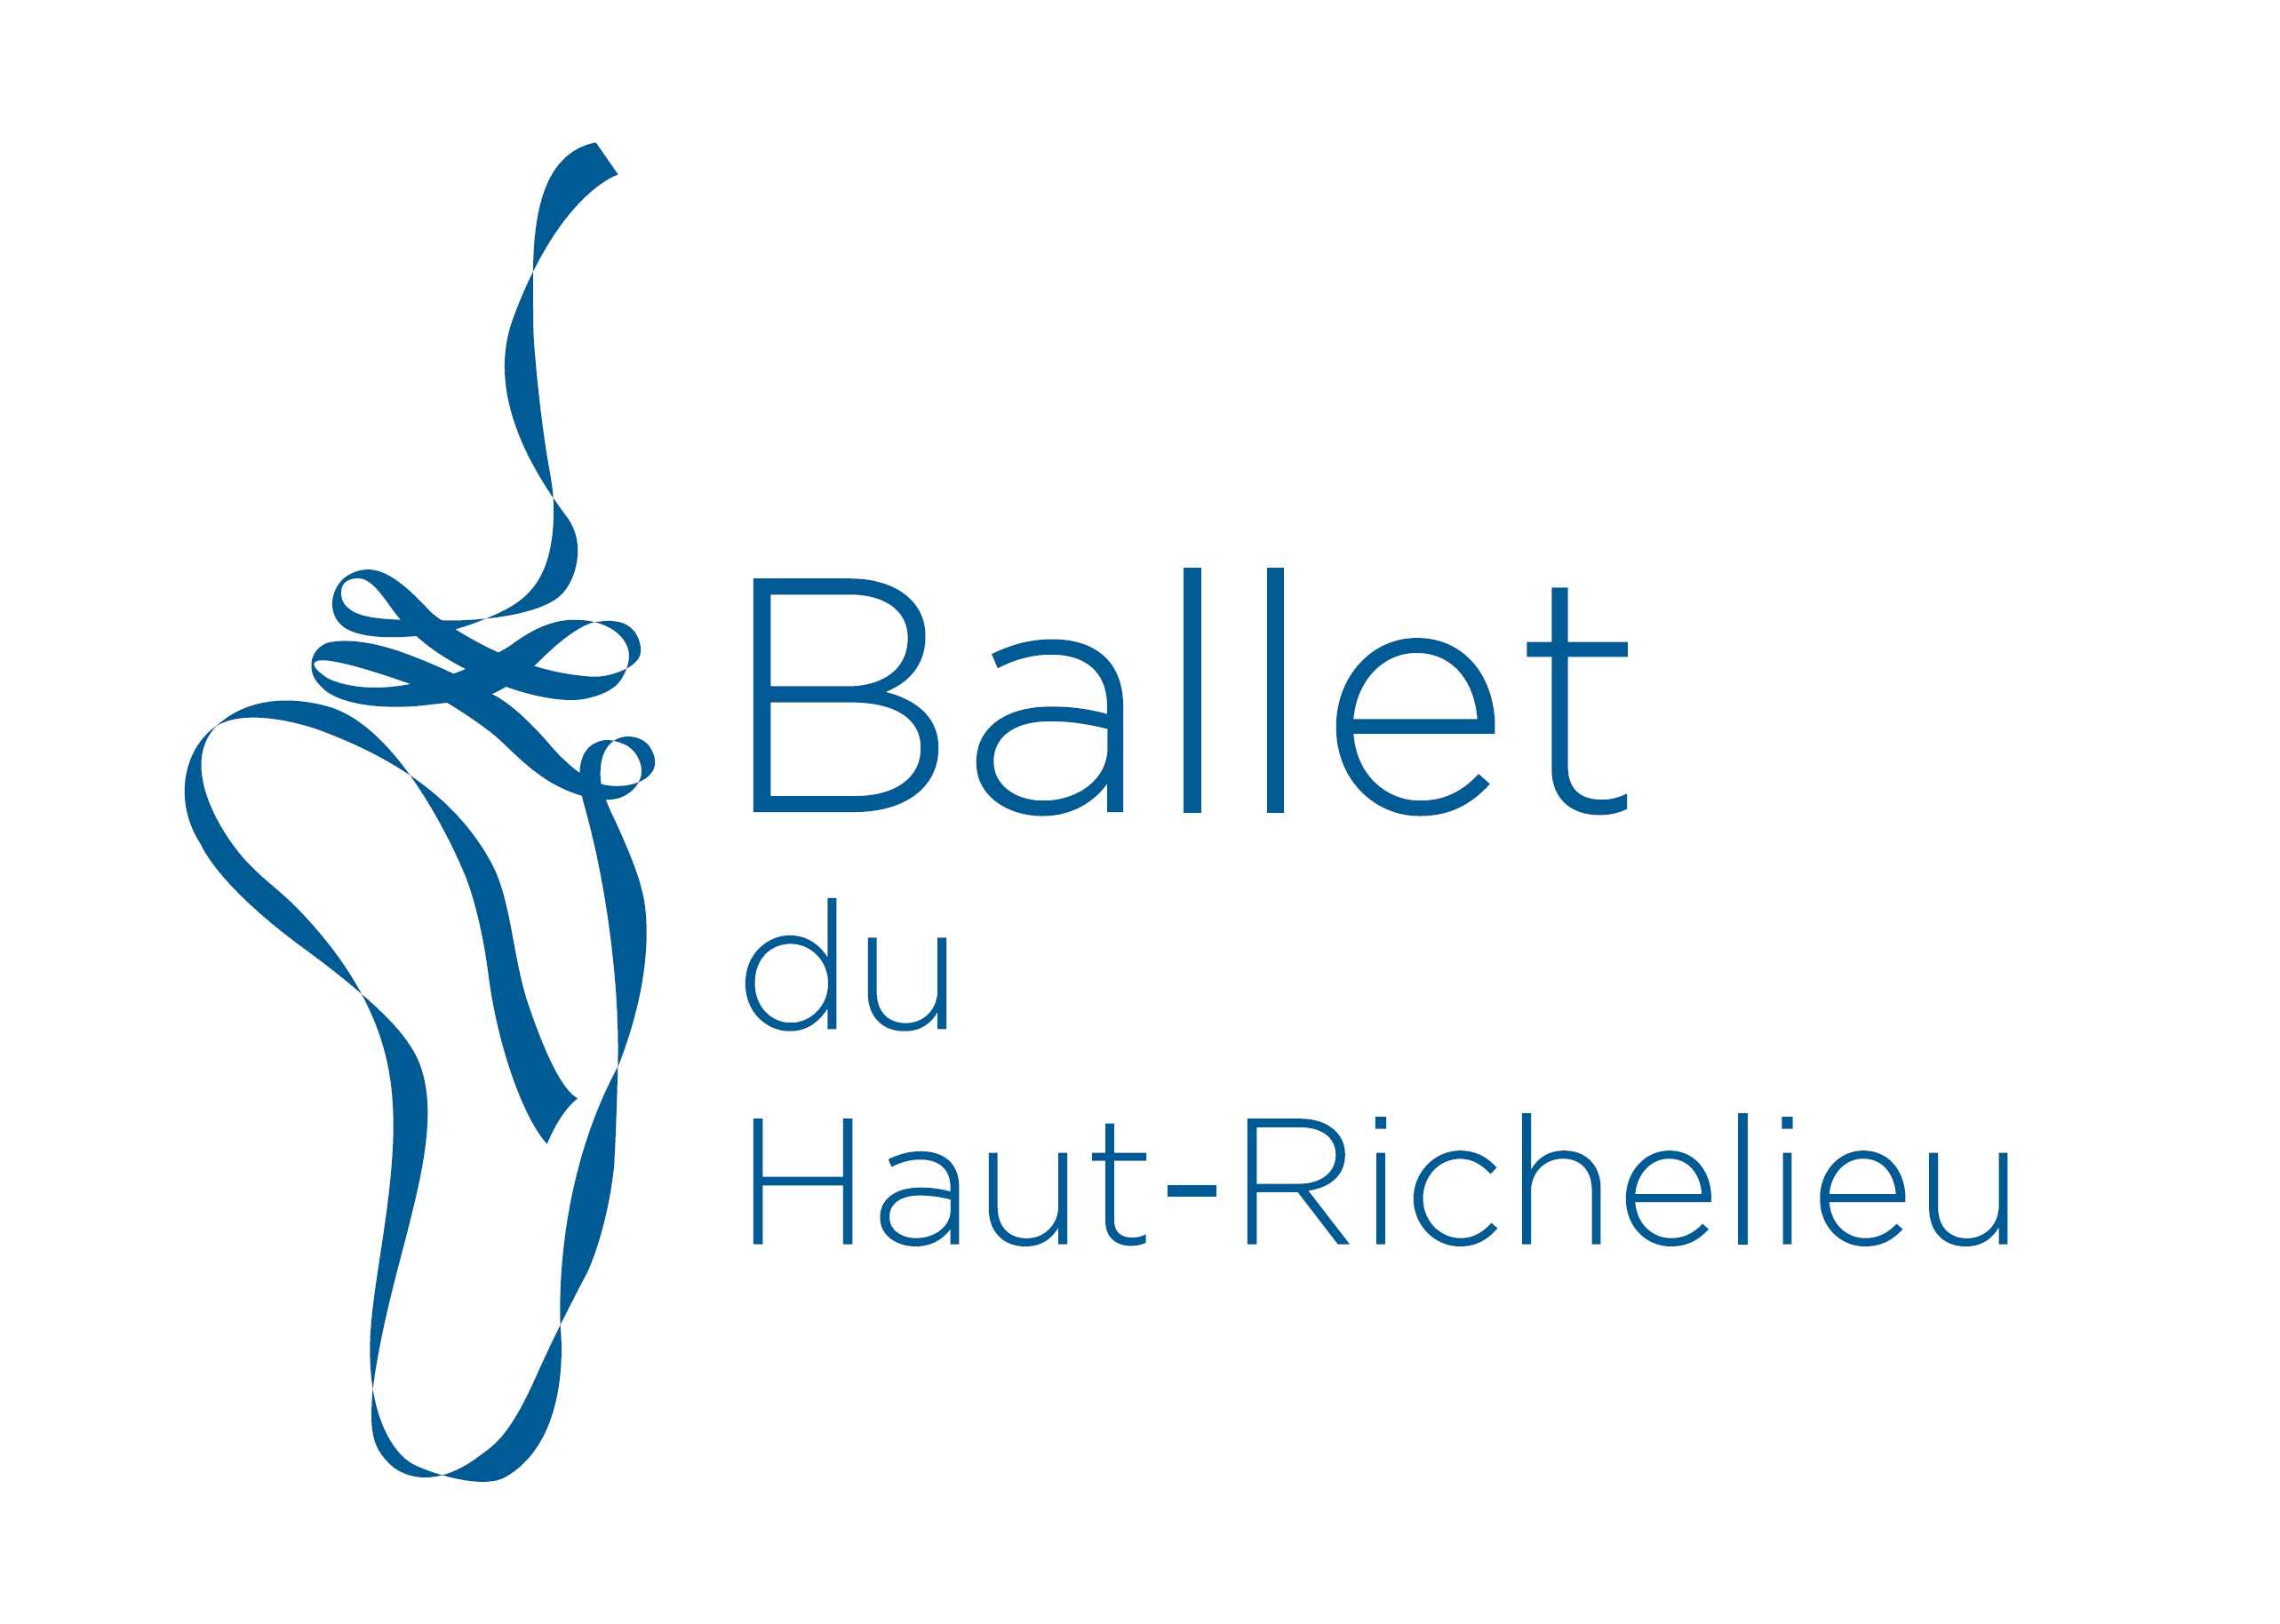 Ballet Classique du Haut-Richelieu logo